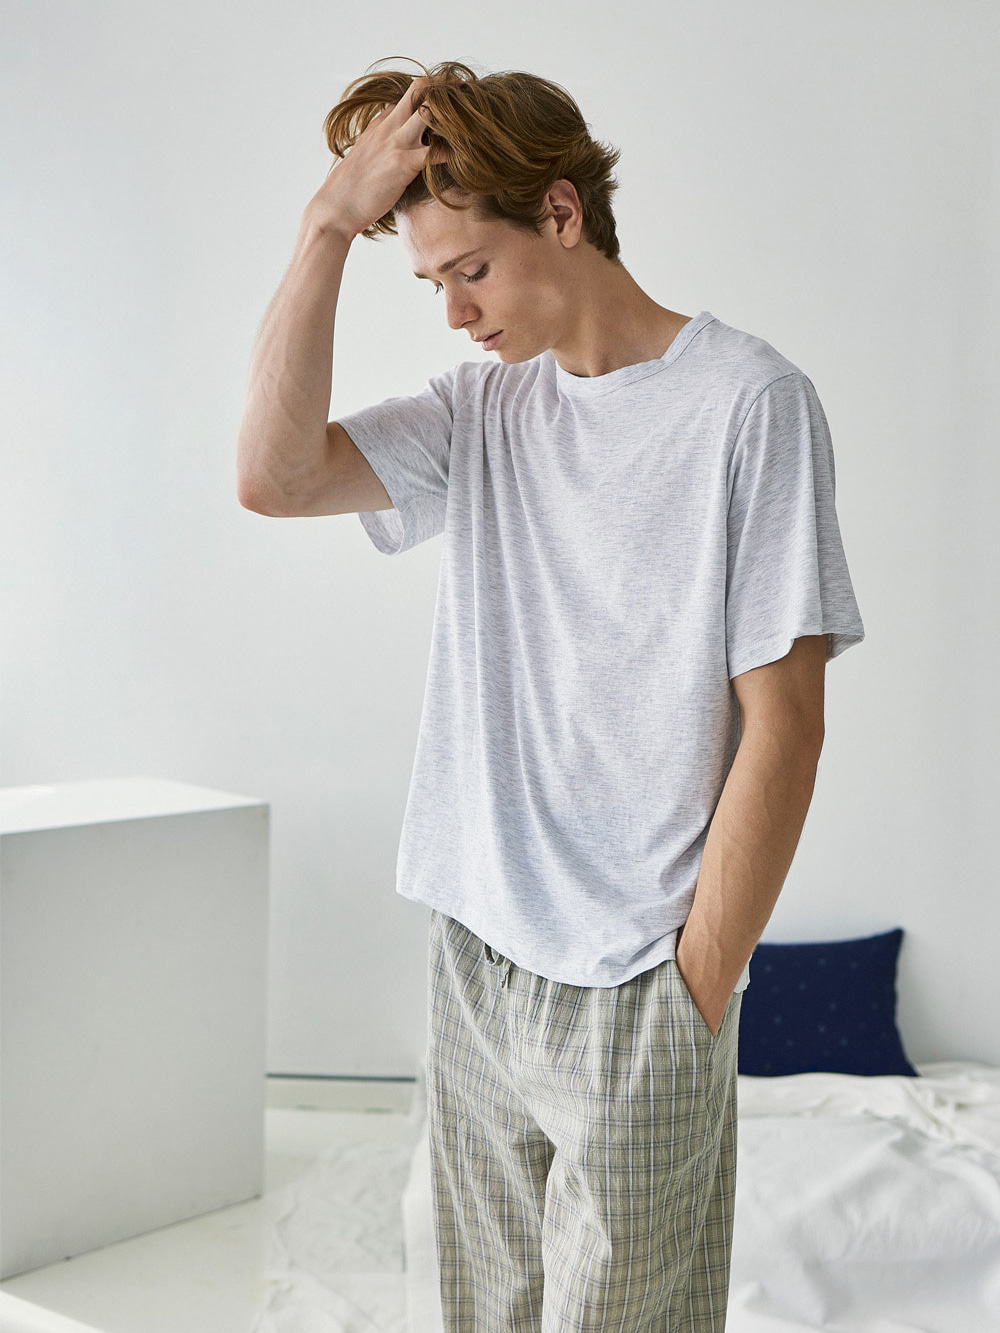 코즈넉 KOZNOK - 코튼 무지 남자 잠옷 파자마 홈웨어 라운지웨어 남성 반팔티 면 티셔츠